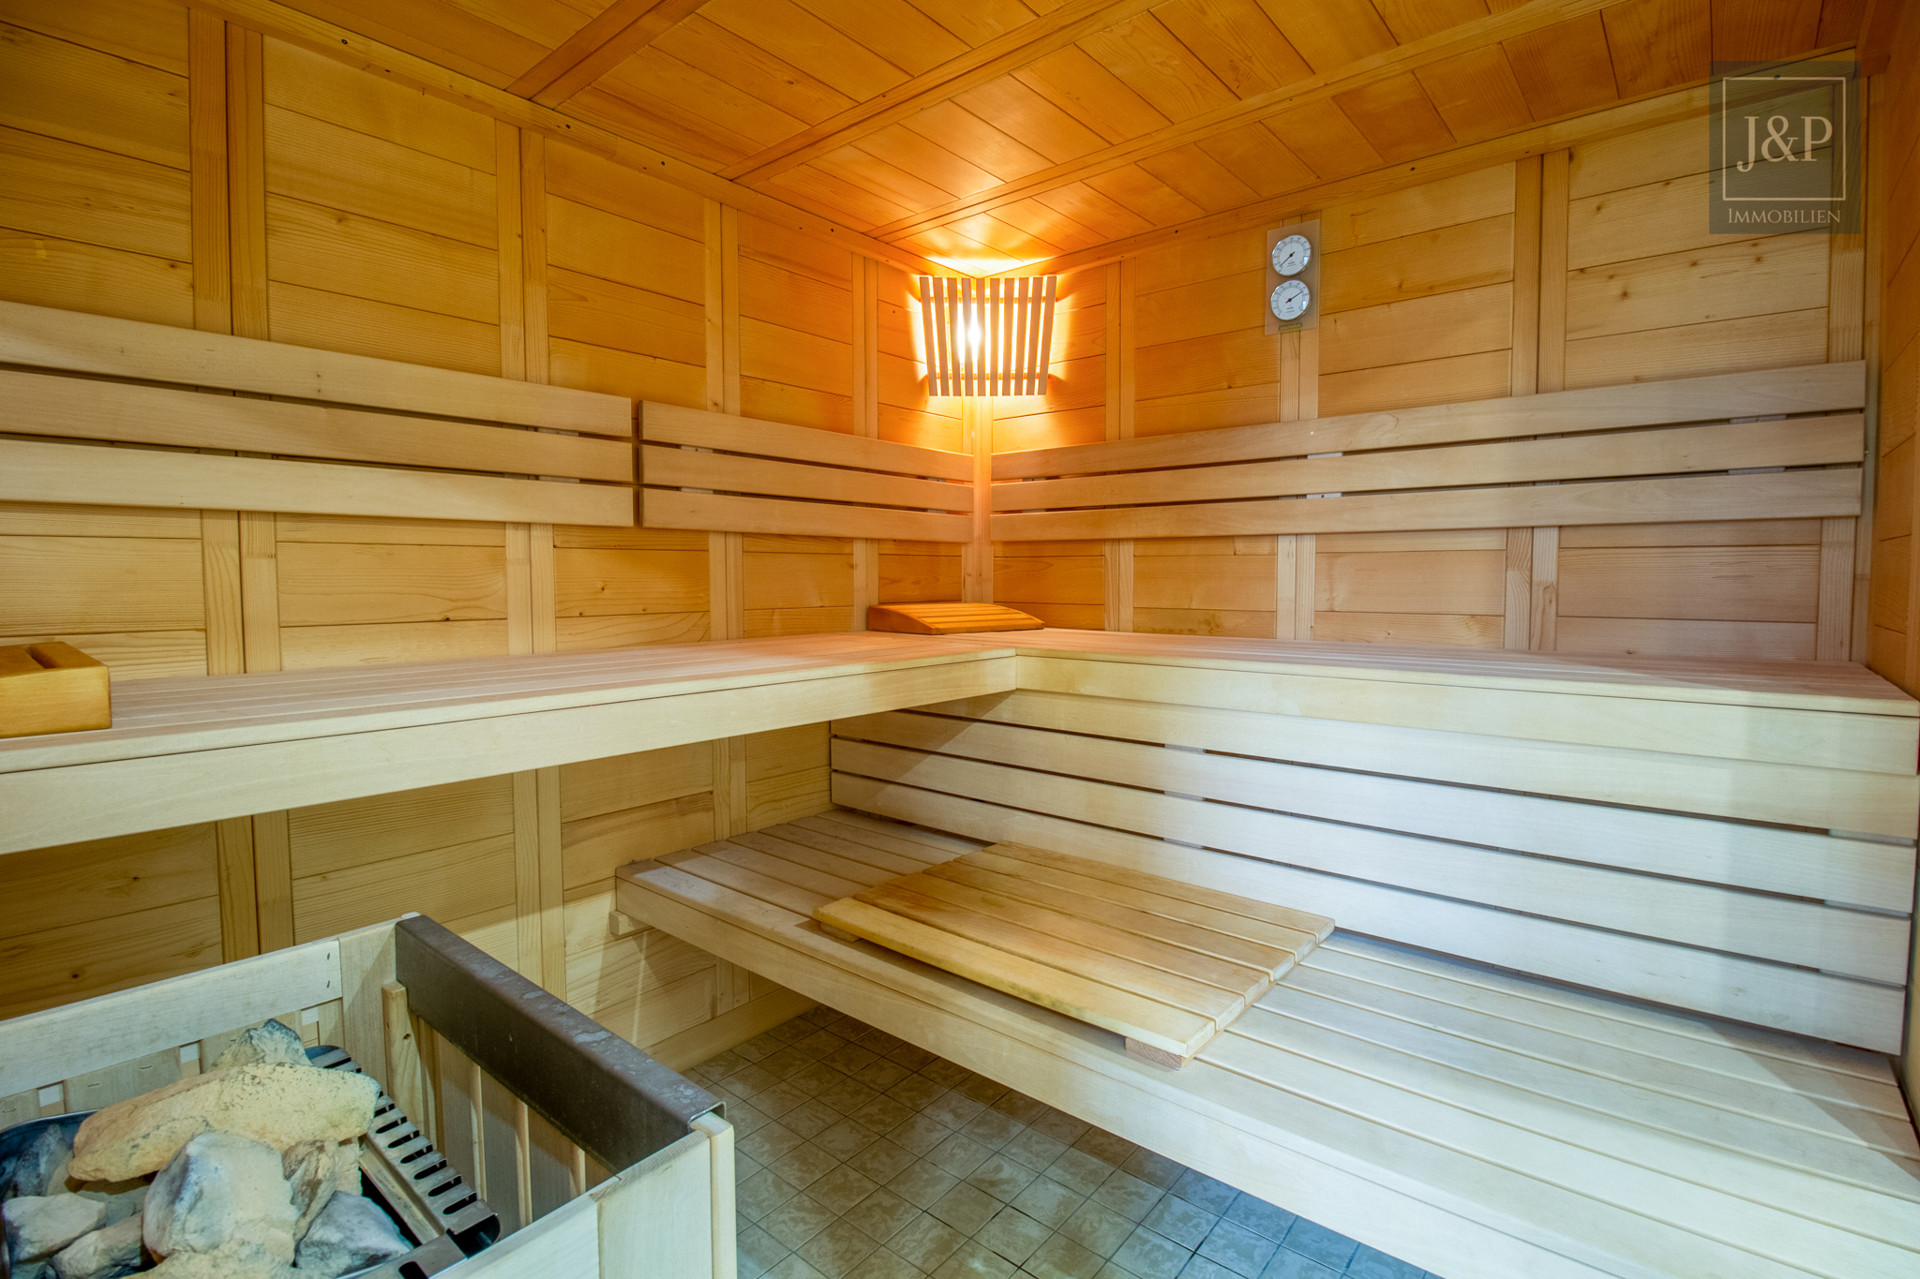 Reserviert! - Komplett sanierte Eigentumswohnung am Bad Homburger Kurpark mit Pool, Sauna & gepflegten Gartenbereich - Sauna